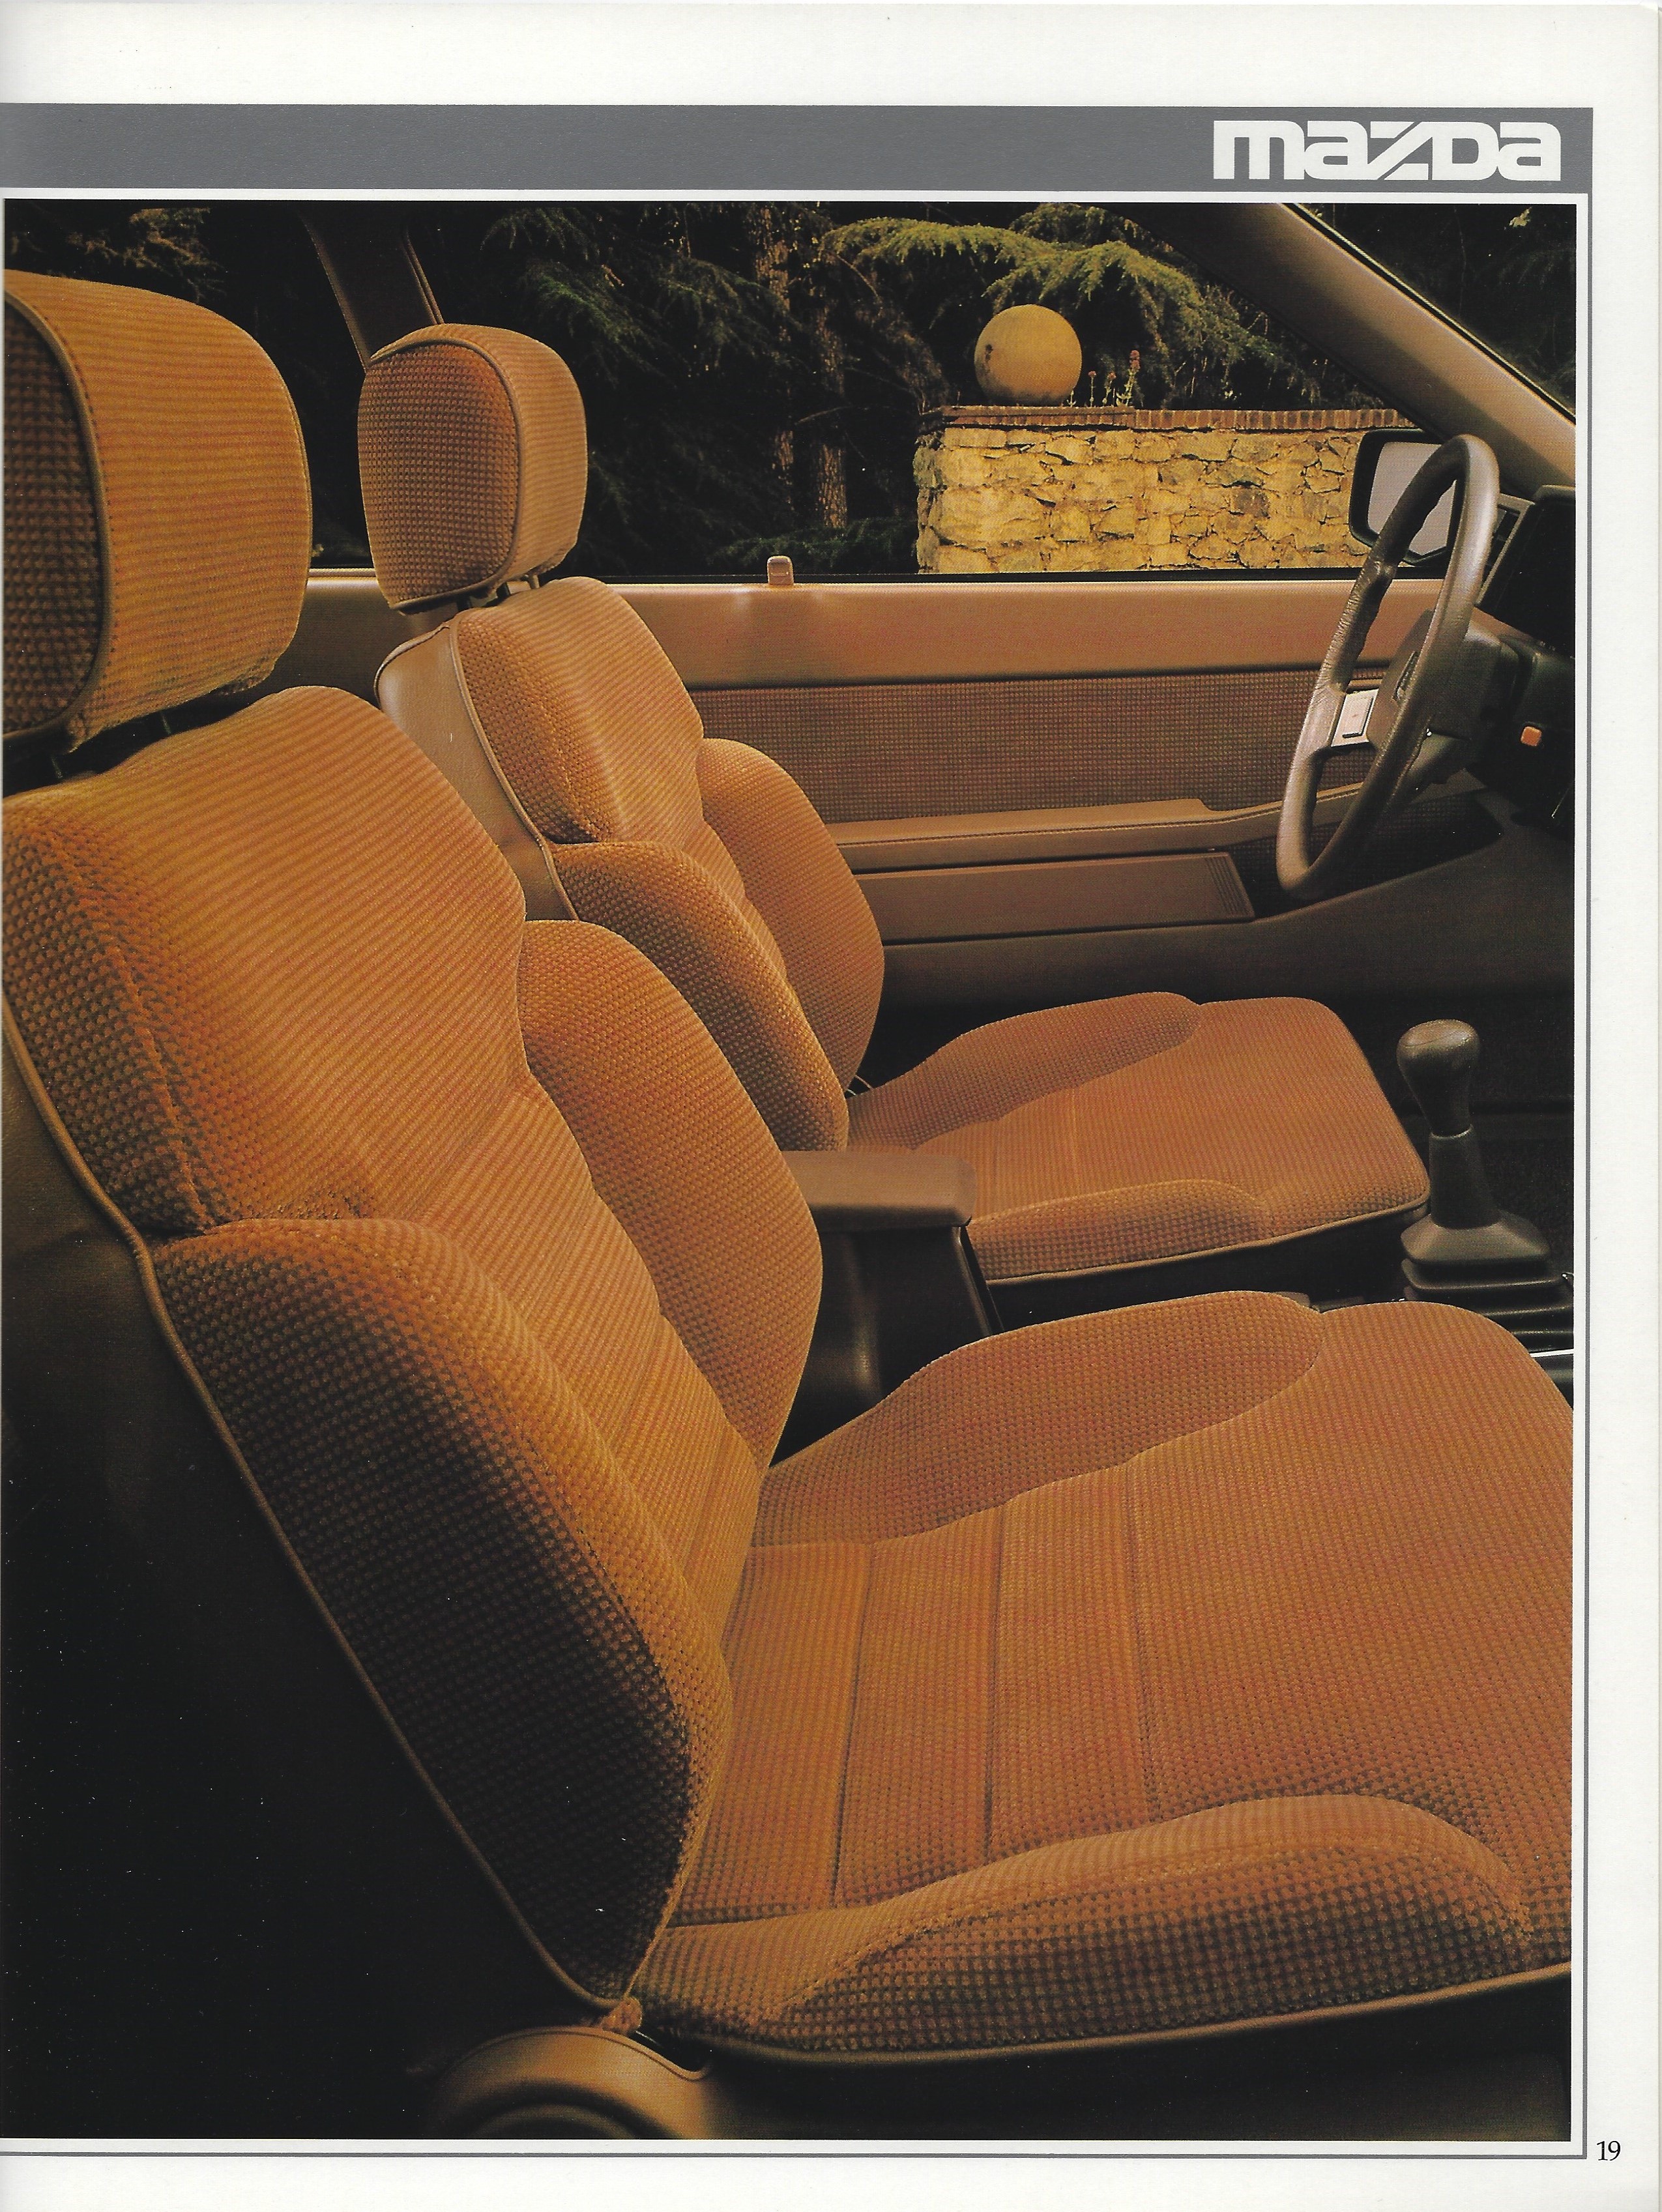 1985 Mazda 626 Brochure 19